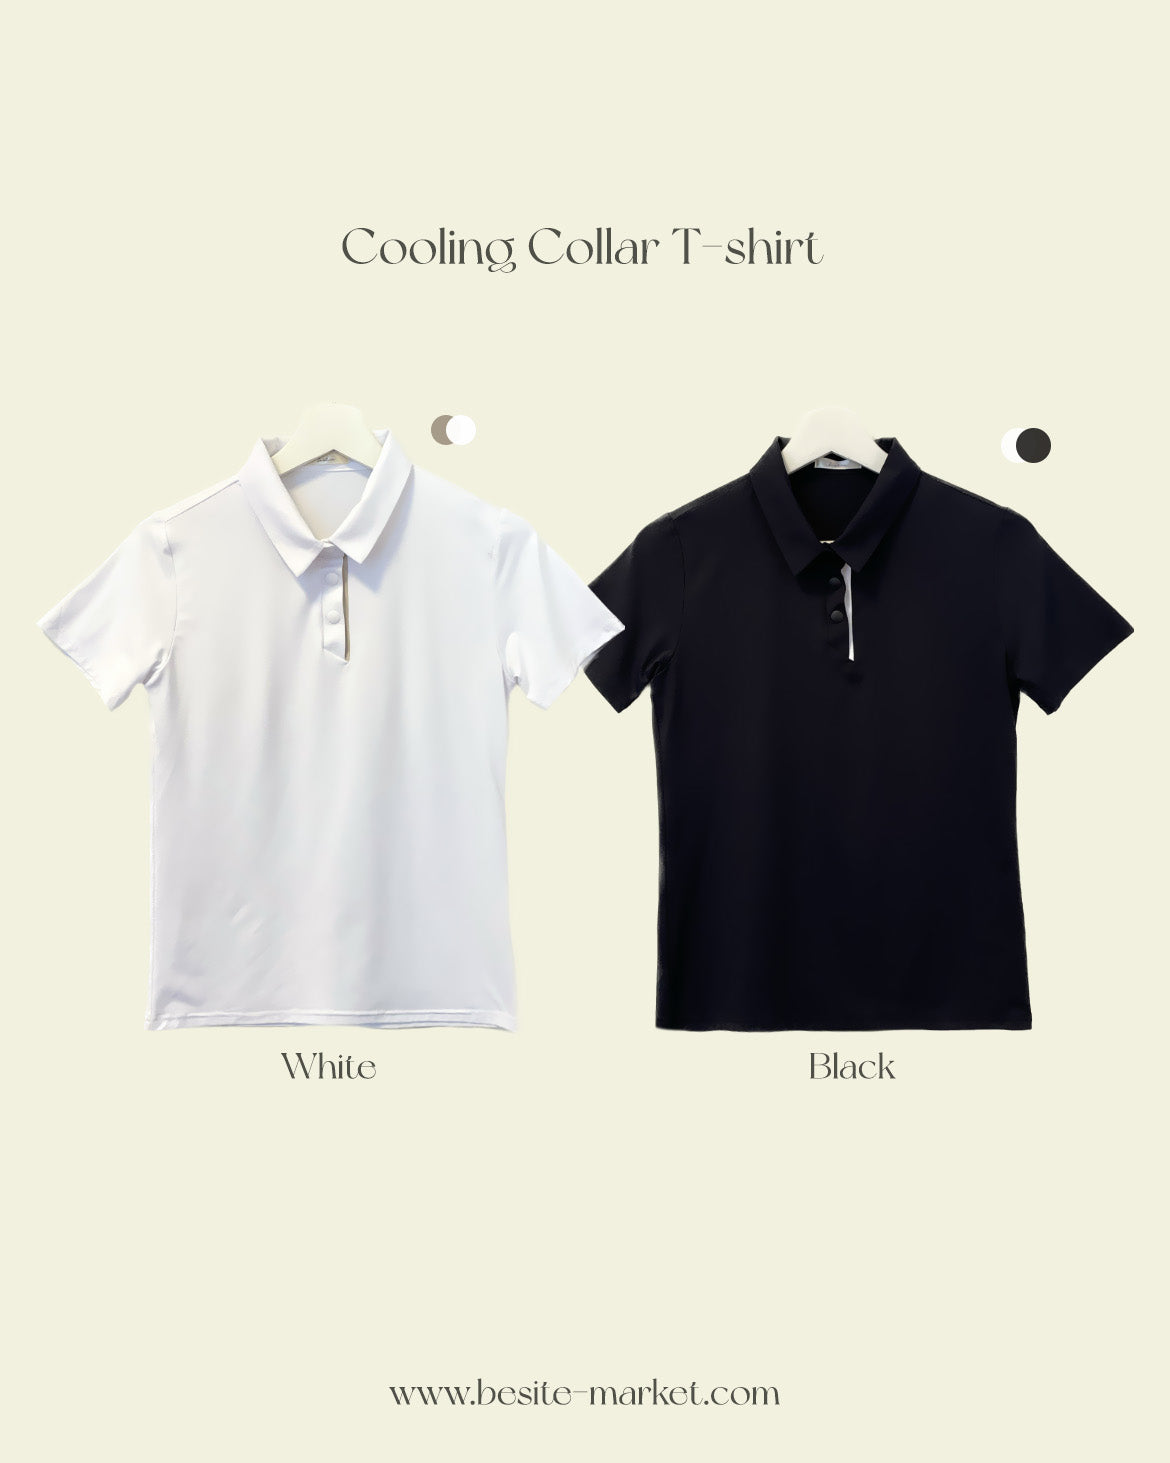 (Golf wear) Cooling Collar T-shirt